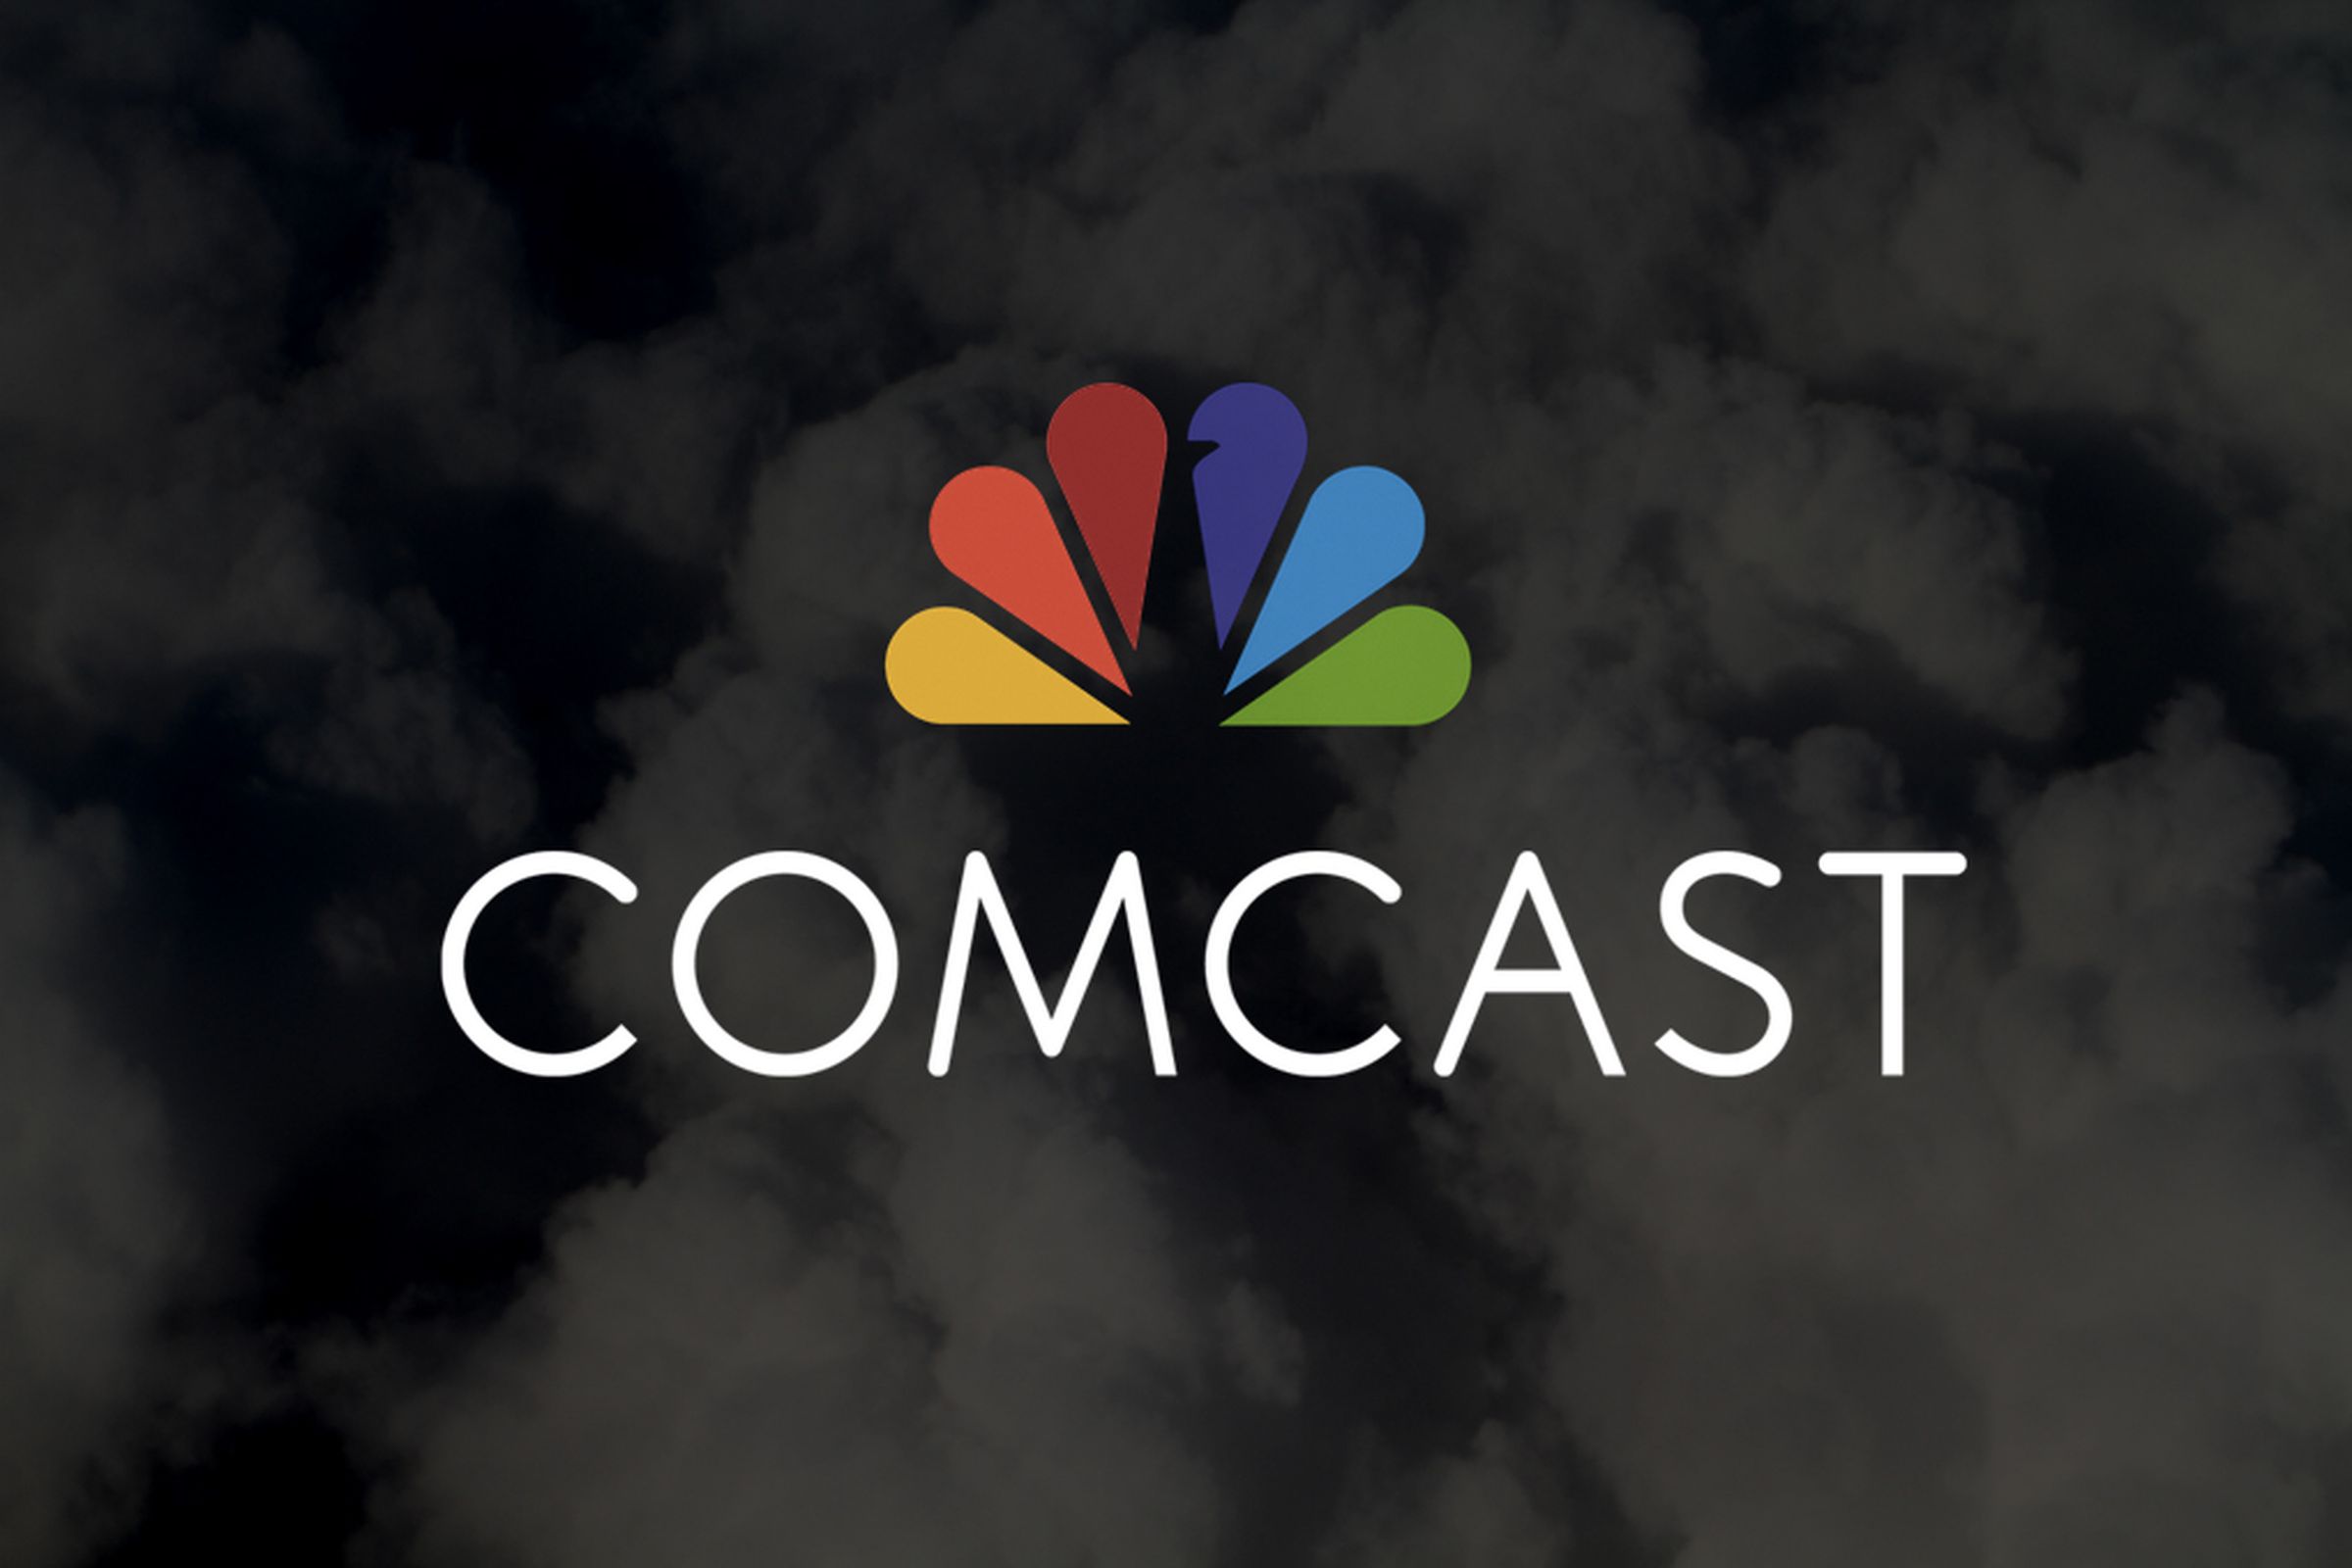 Comcast’s logo